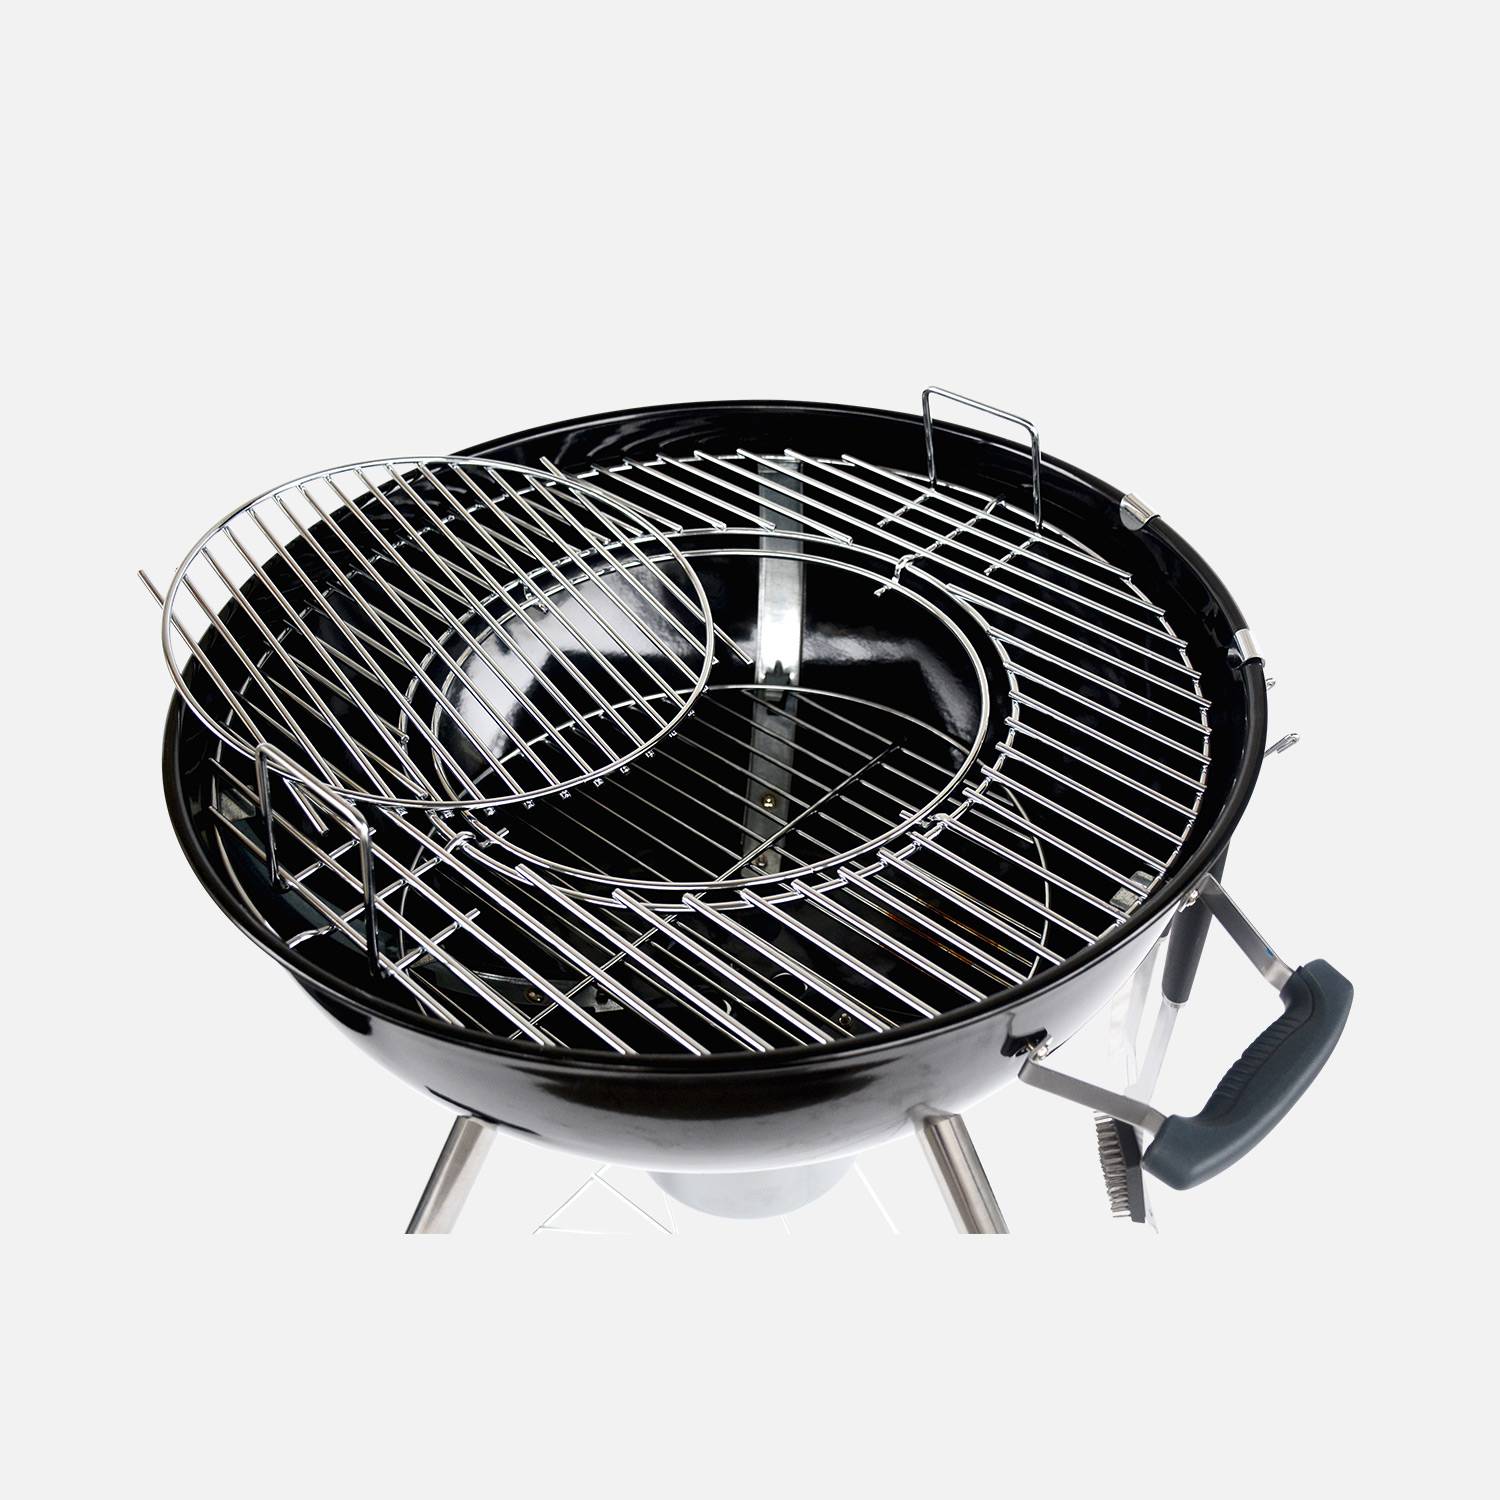 Barbecue PREMIUM charbon de bois Ø57cm, Charles + accessoires - noir émaillé, avec grille amovible, aérateurs, fumoir, récupérateur de cendres, housse, rack et ustensiles + souffleur offert Photo9